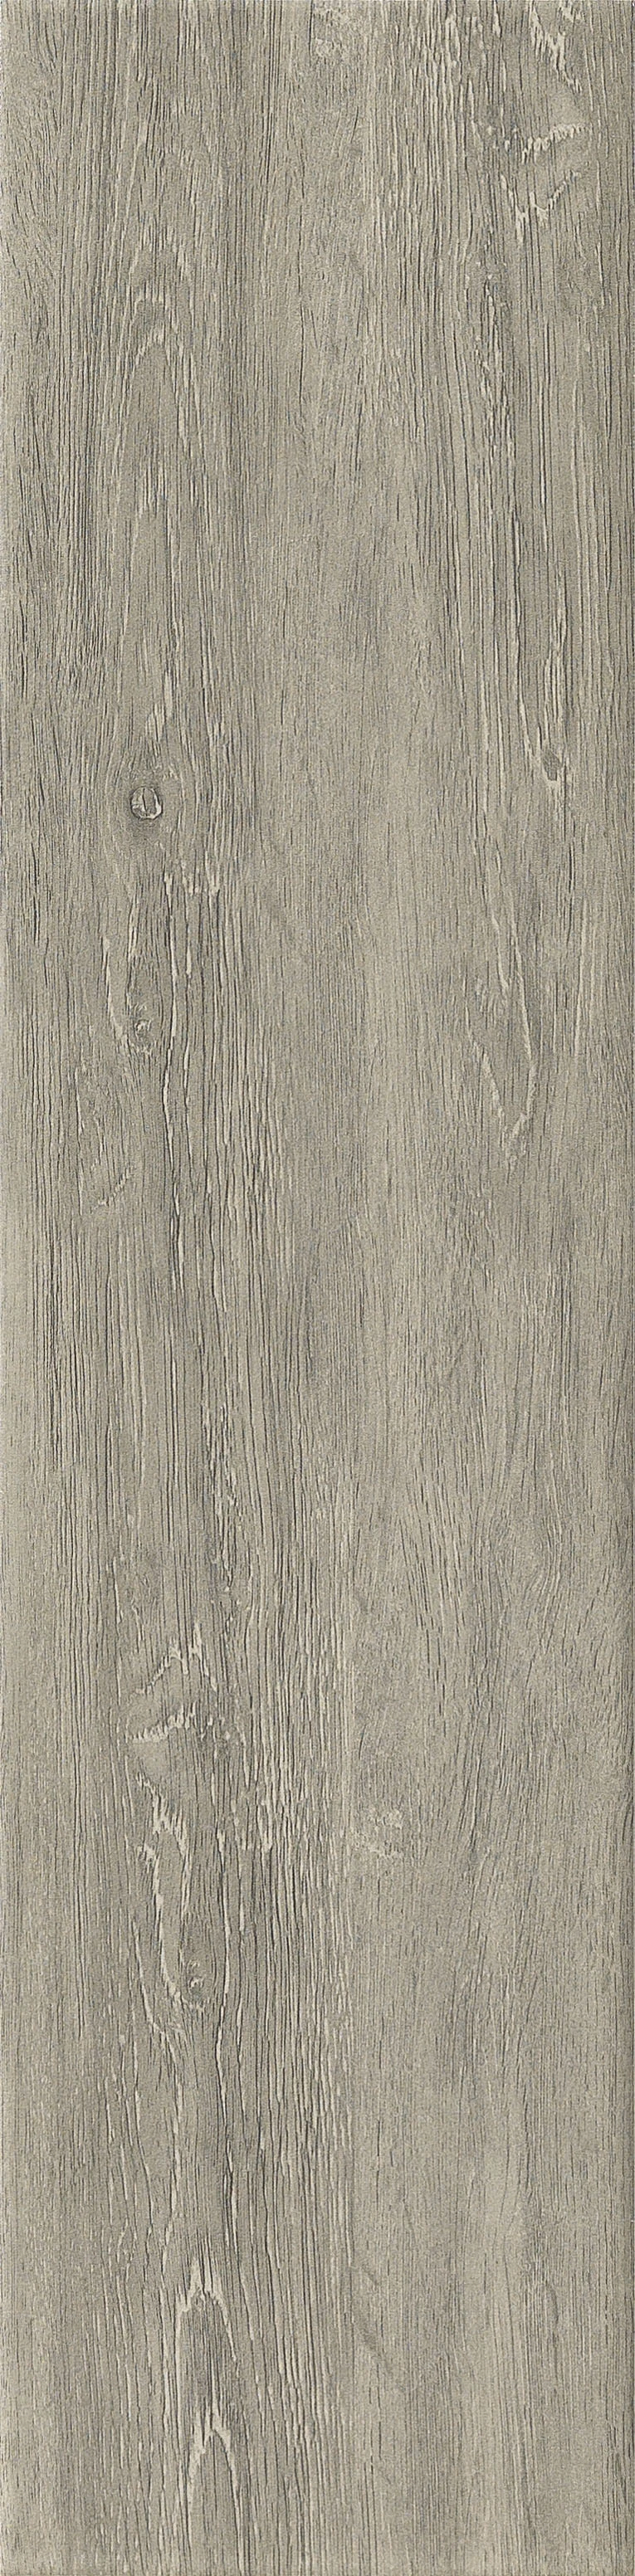 Wood Glazed Nature Wood Design Rustic Floor Tiles in Foshan (600*150mm)